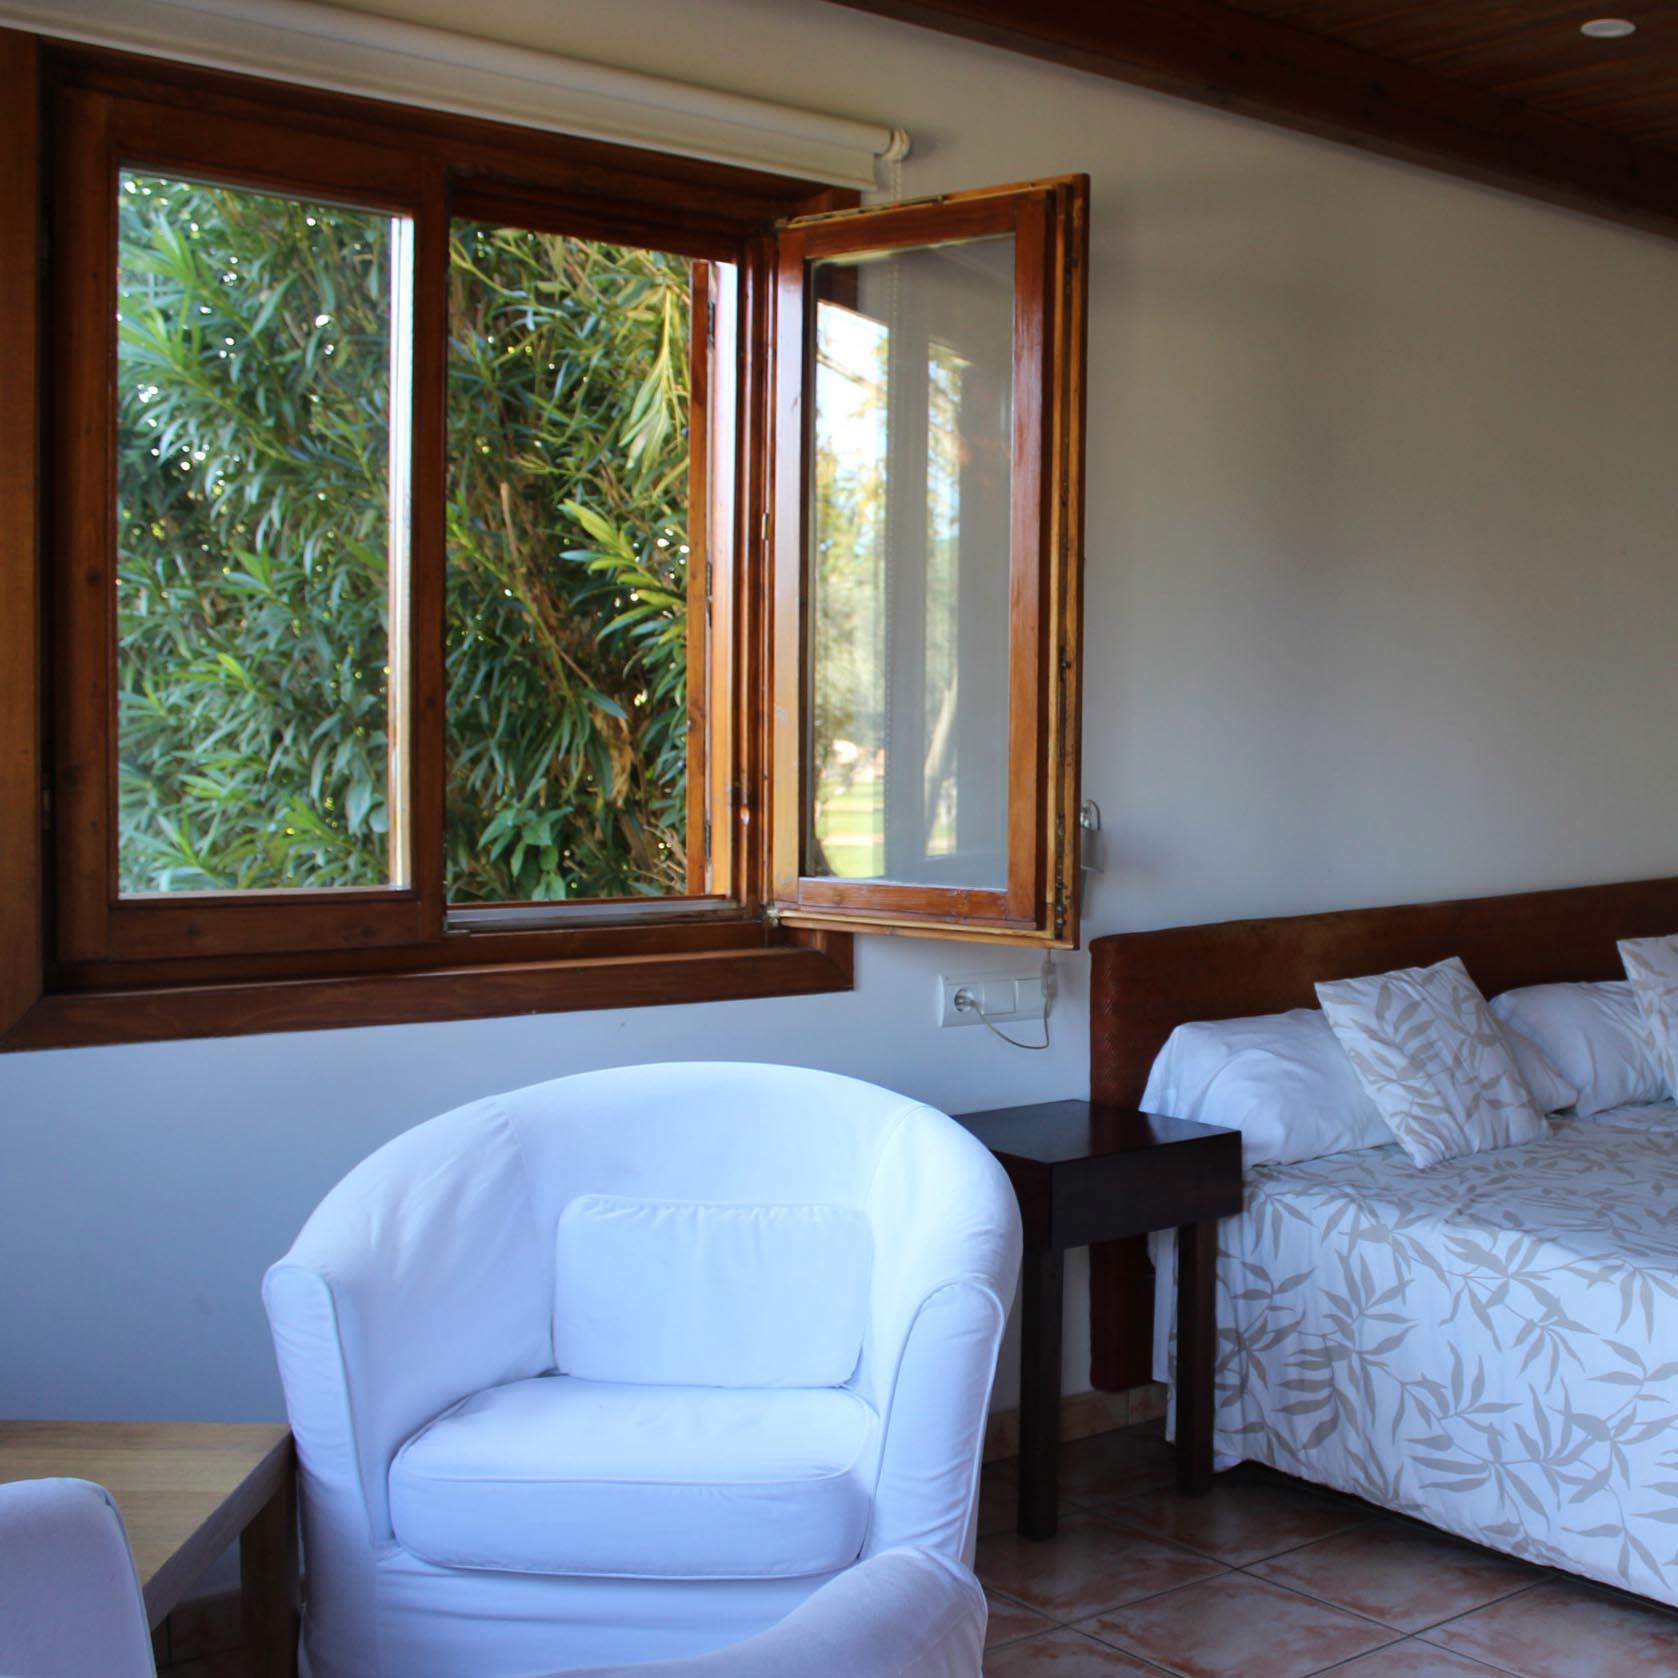 Habitación con muebles oscuros y textiles de color blanco